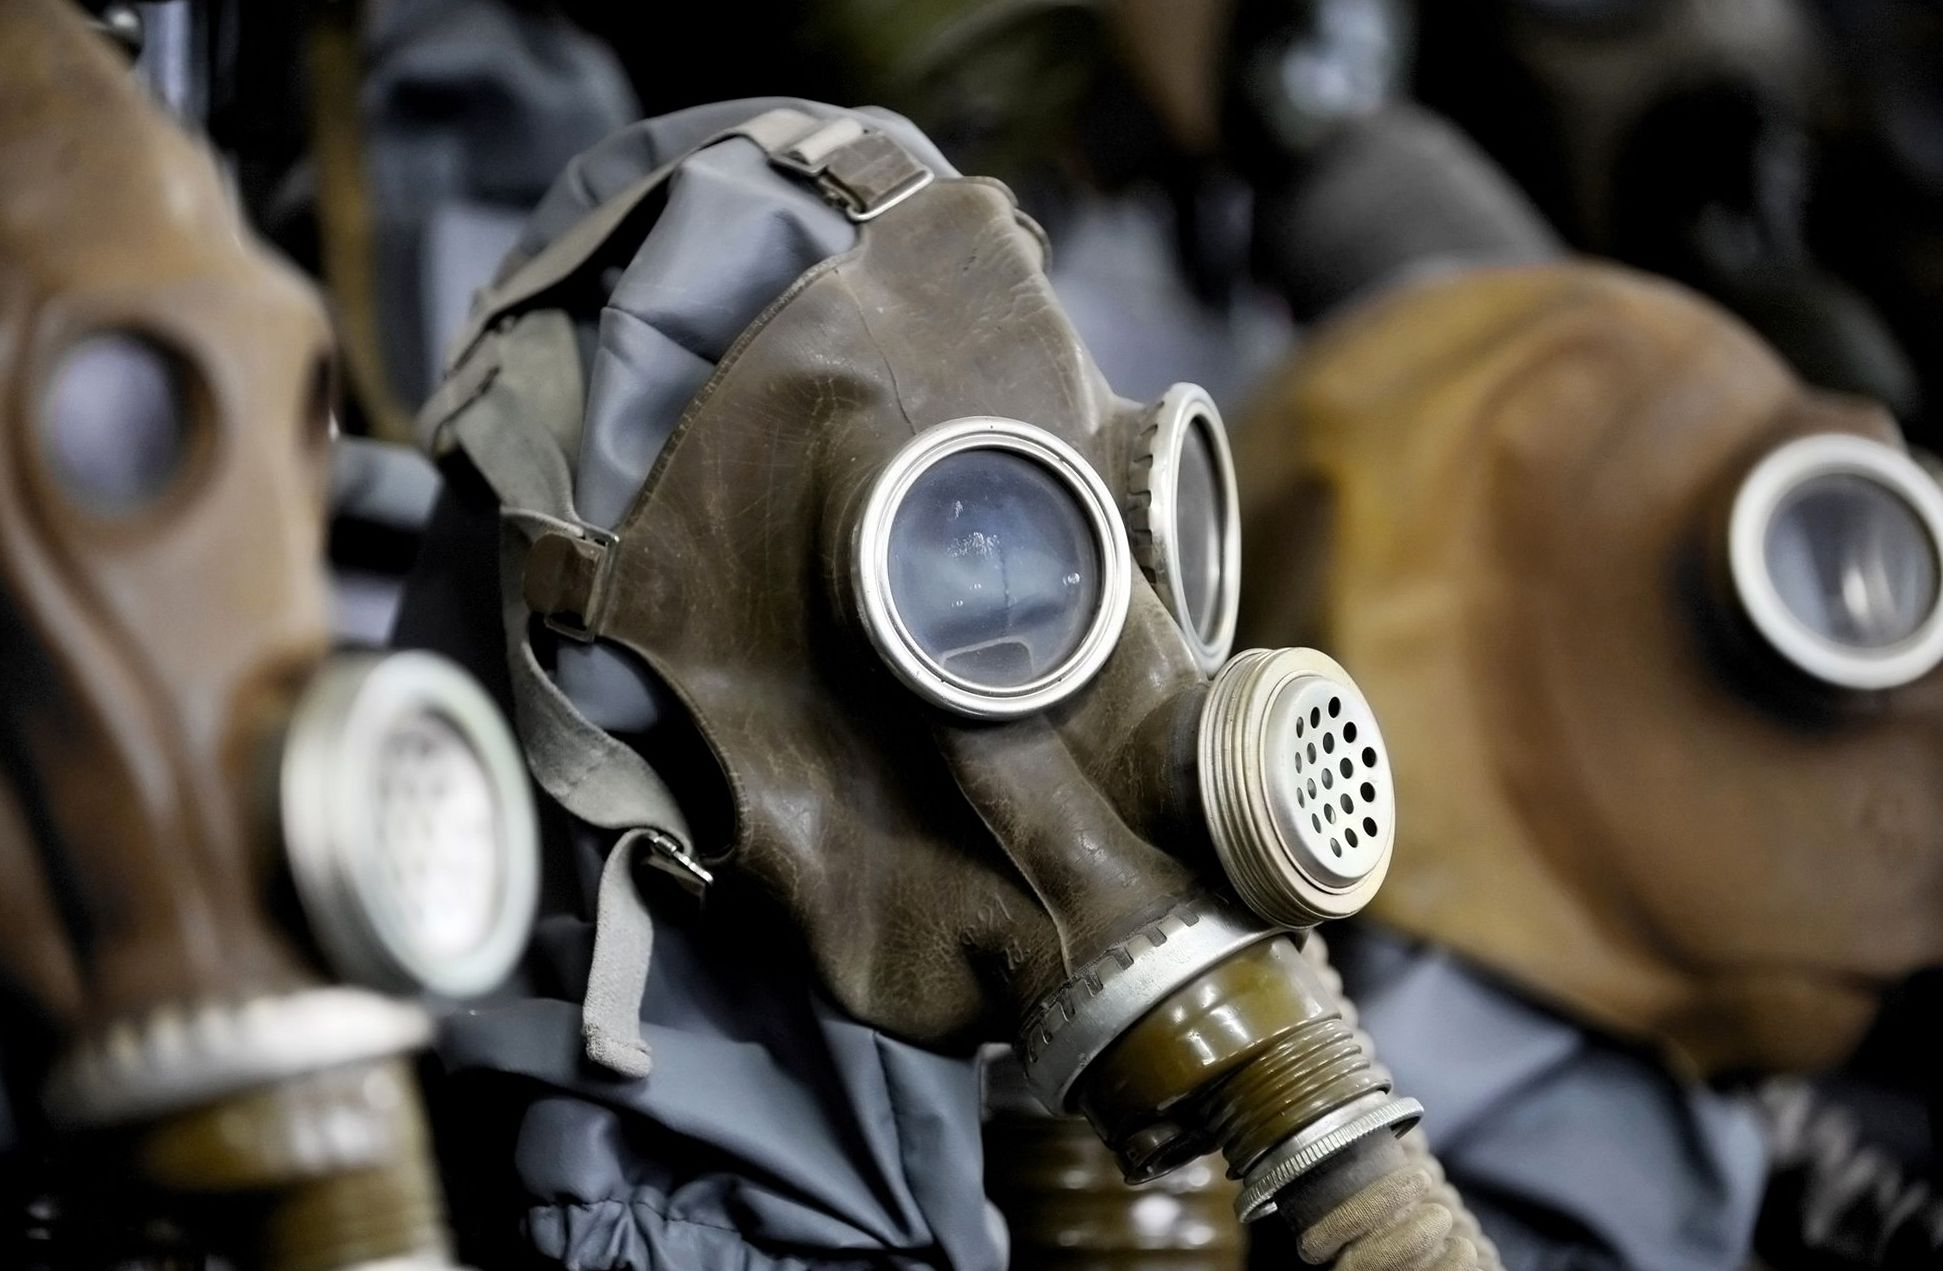 химическое оружие как защититься способы защиты от химического оружия как защитить себя от химического оружия как влияет химическое оружие на человека выжить работает fdlx.com